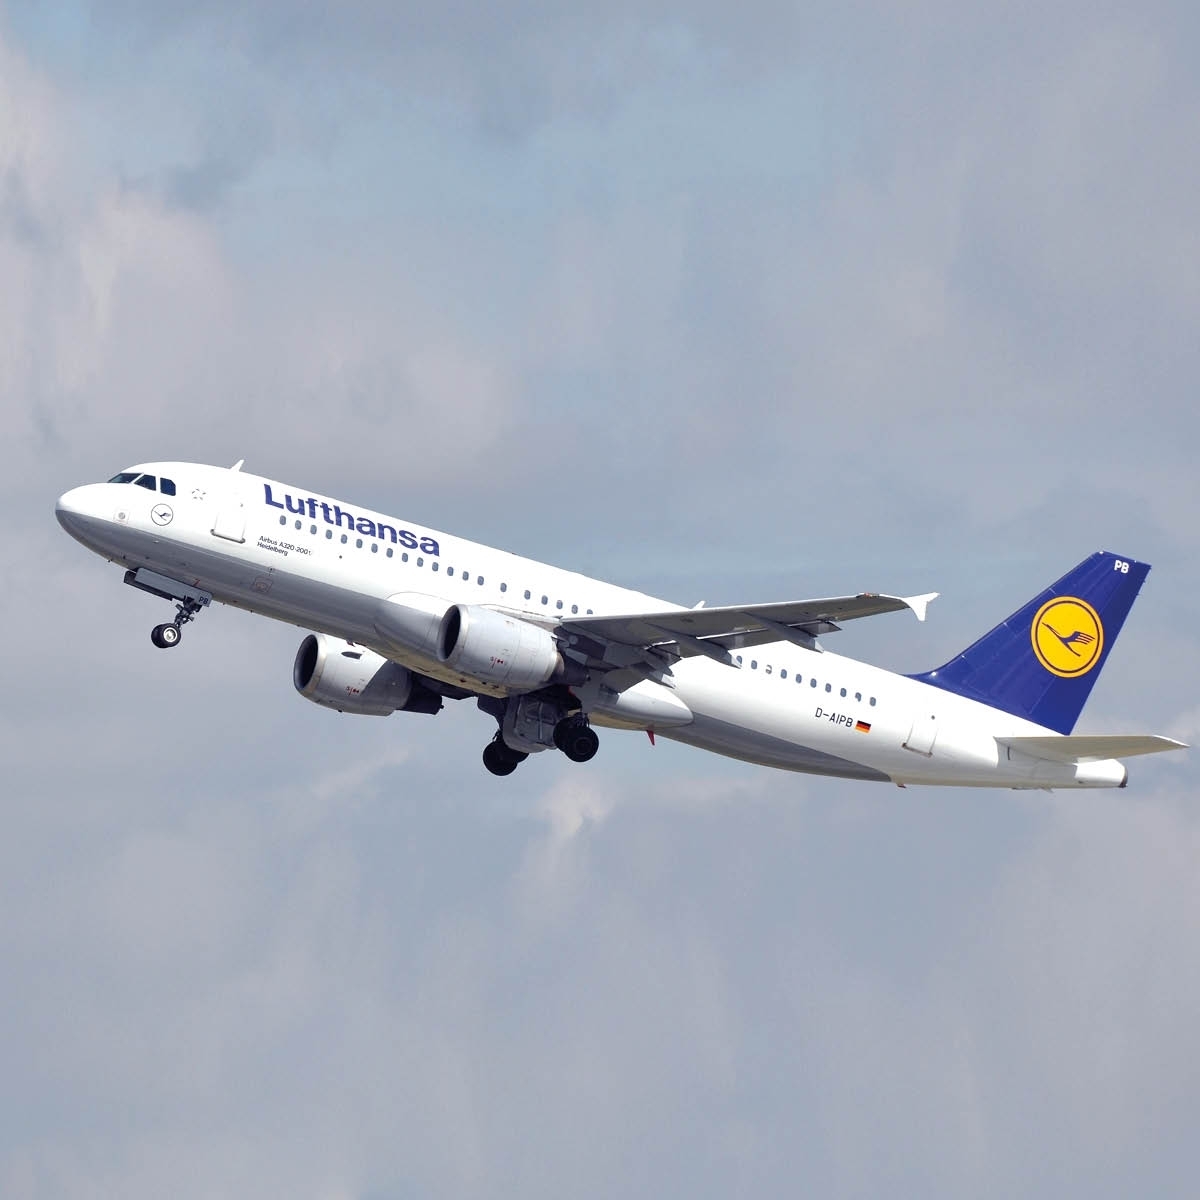 Aviationtag Lufthansa - Airbus A320 - D-AIPB Blue, White